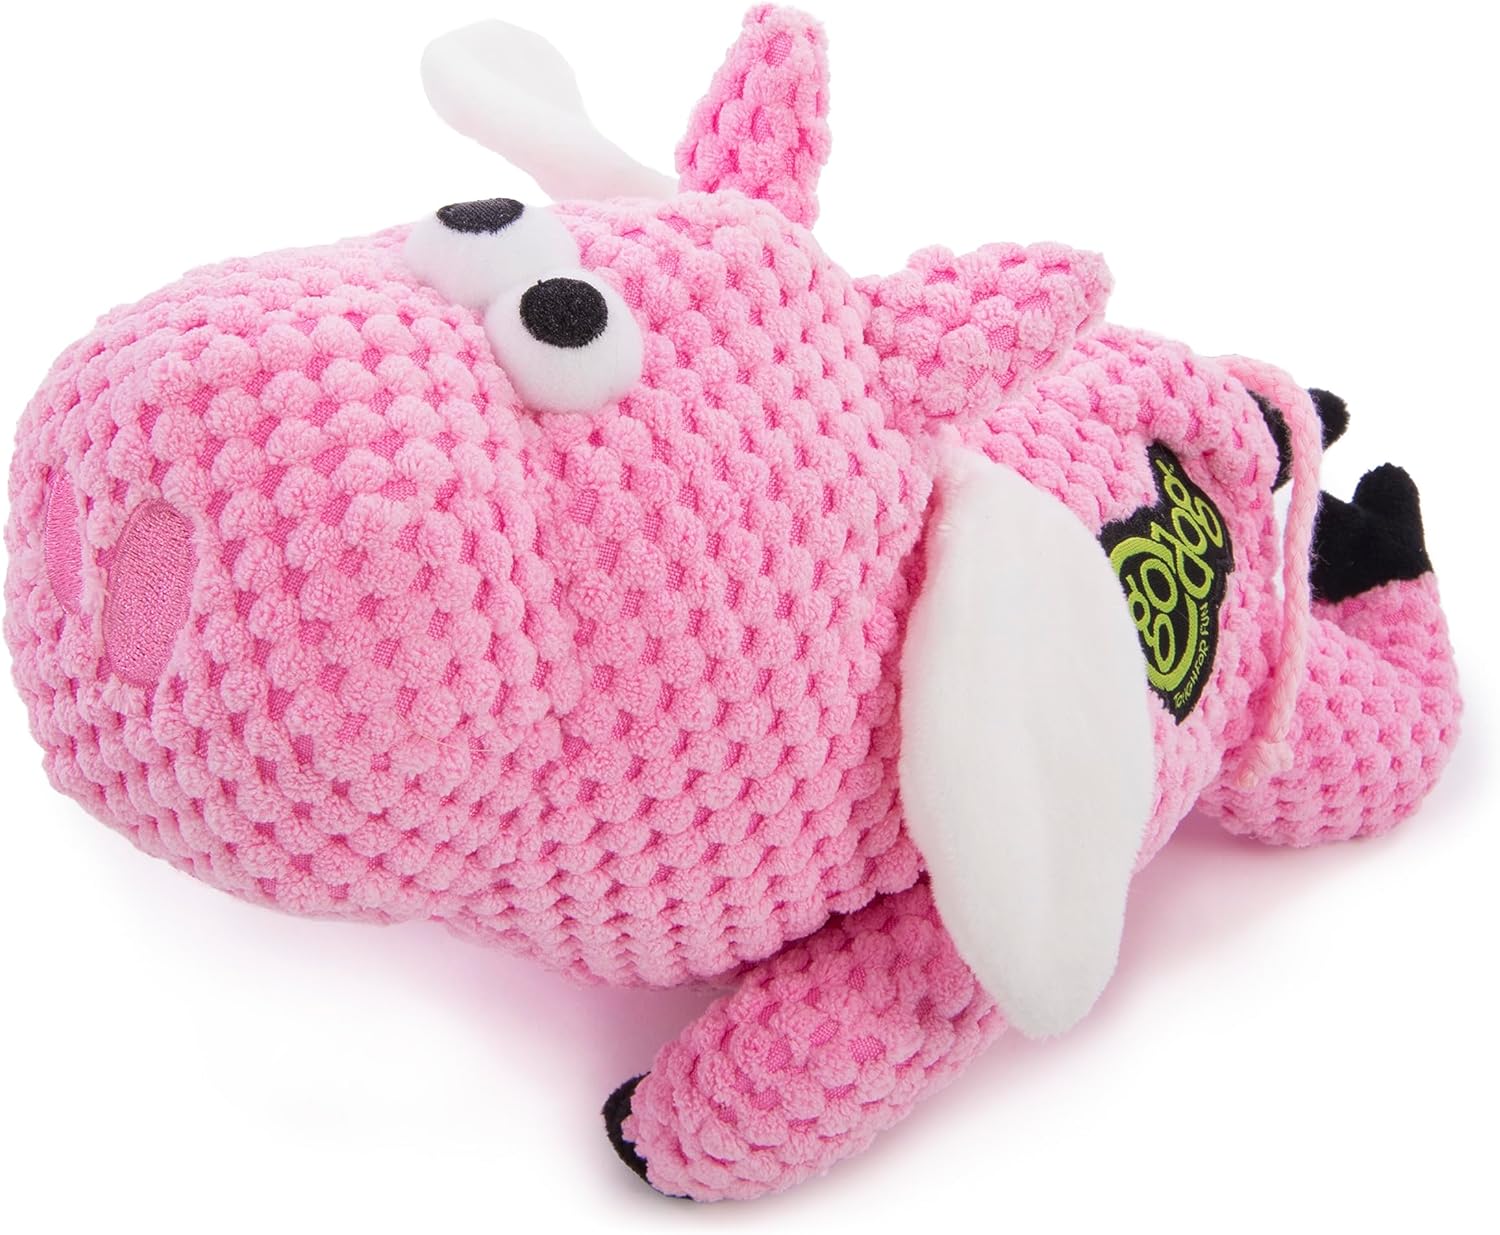 goDog Gators Squeaky Plush Dog Toy, Chew Guard Technology - Pink, Large